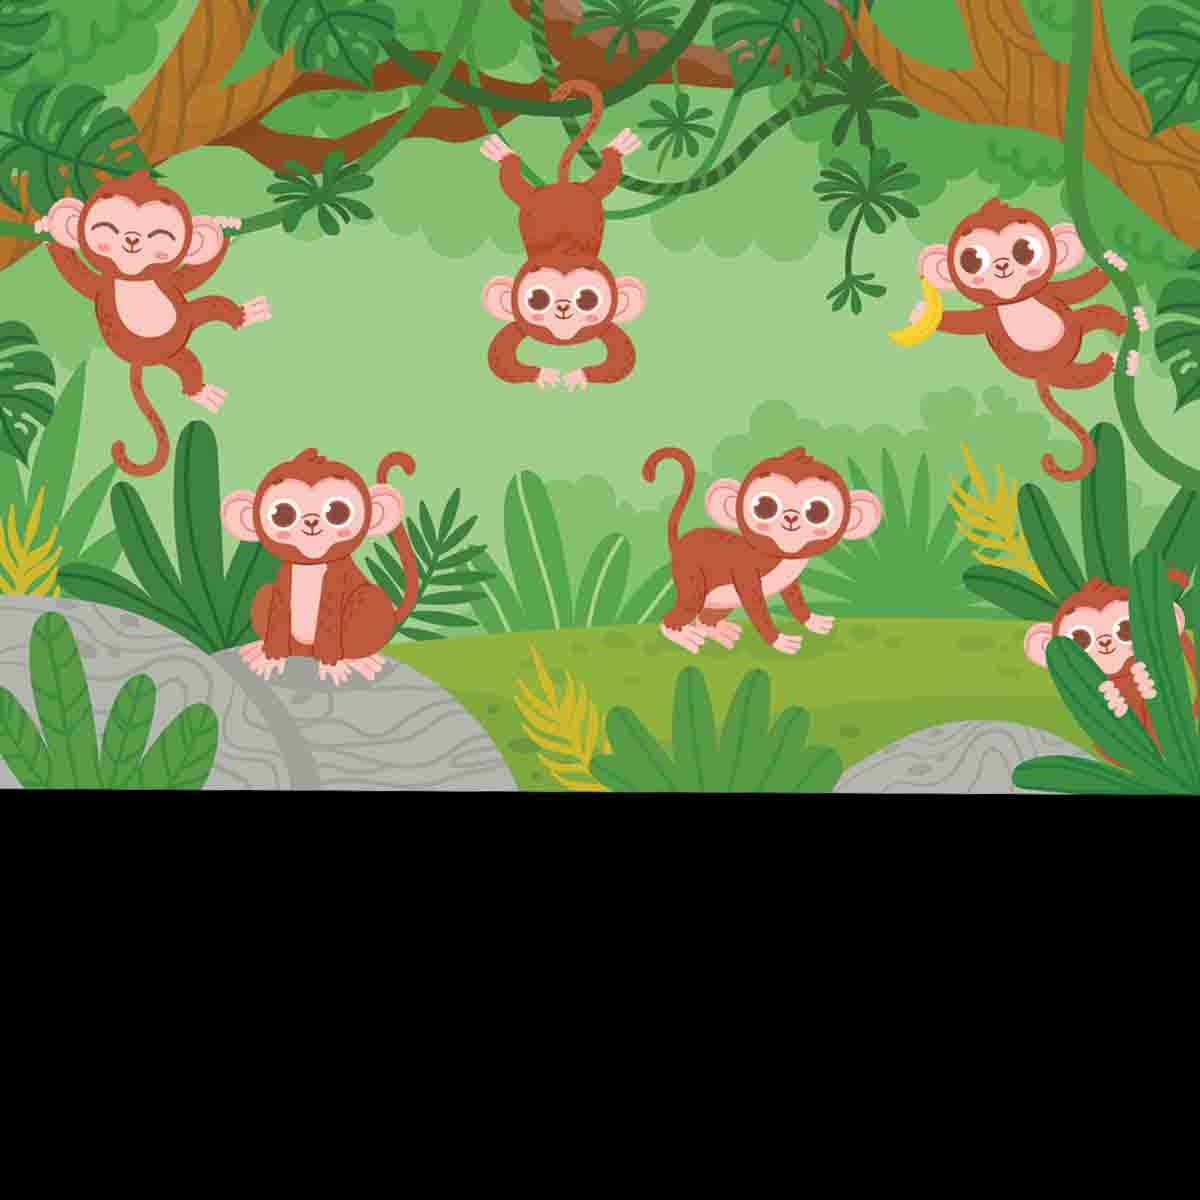 Cute Monkeys Hanging on Lianas Trees in Jungle Forest Wallpaper Nursery Mural